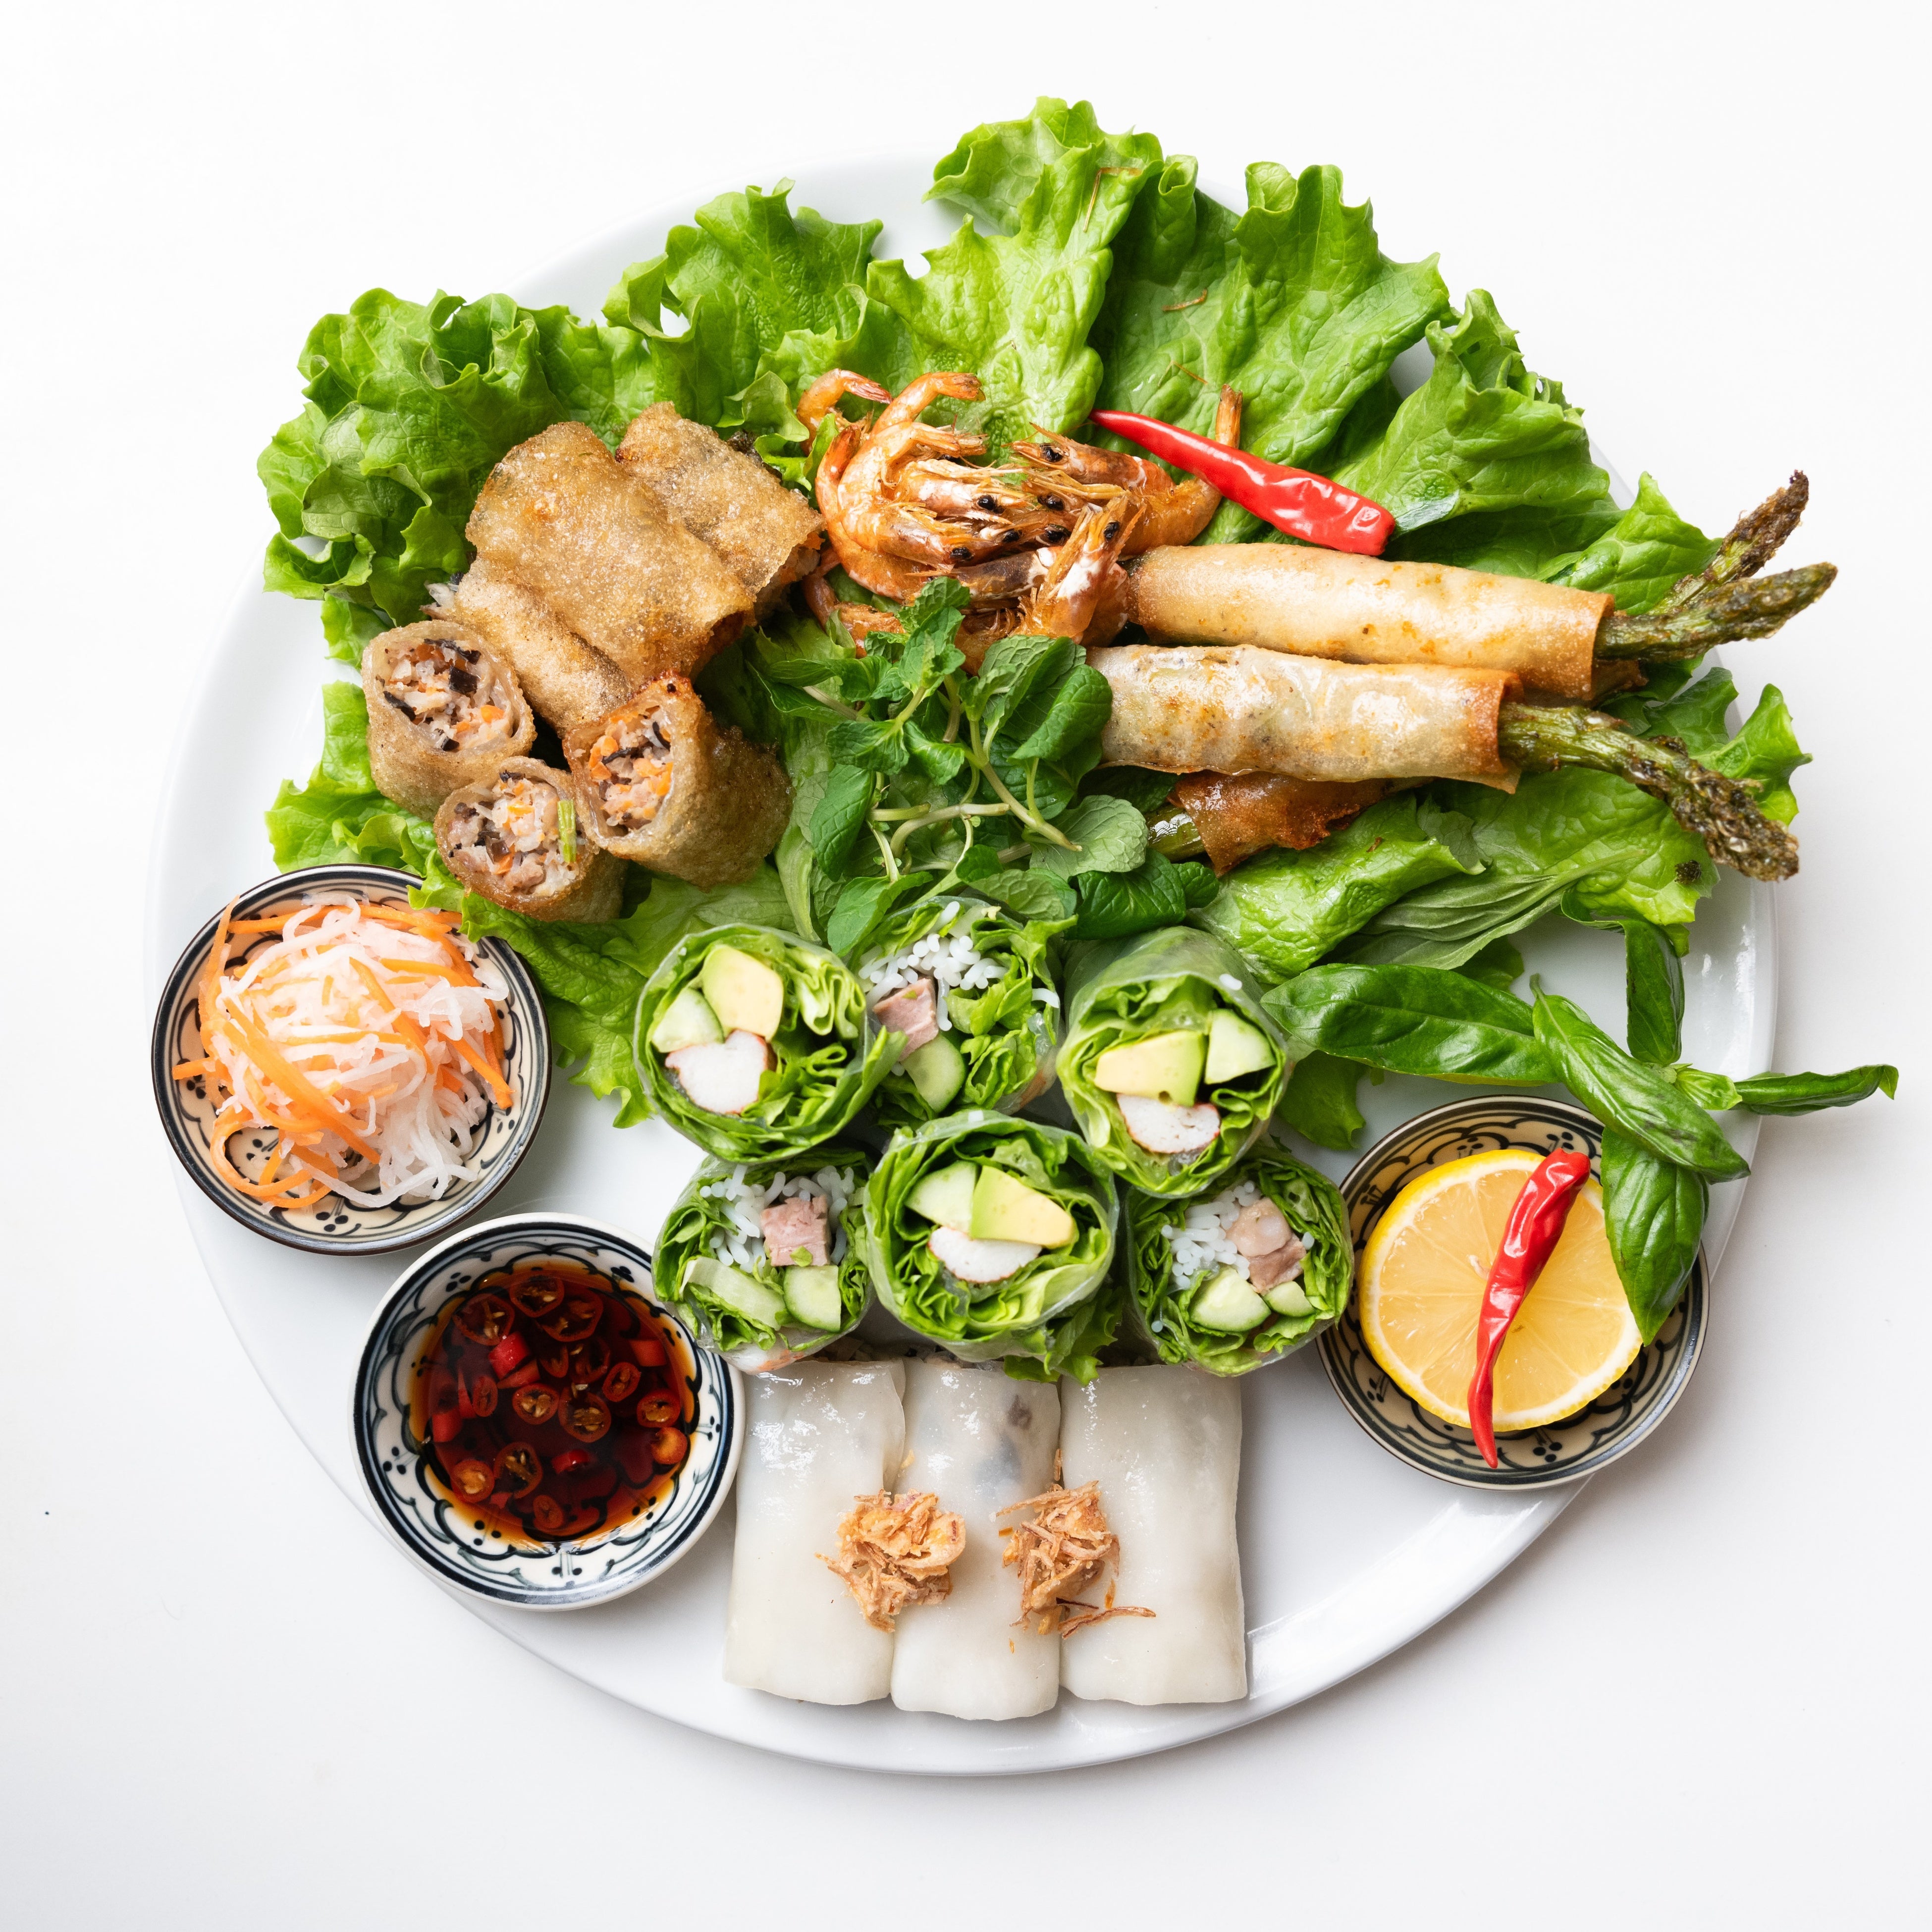 銀座のベトナム料理レストラン『ヴェトナム・アリス』この夏に迎える25周年を記念して特別感謝コースを限定販売